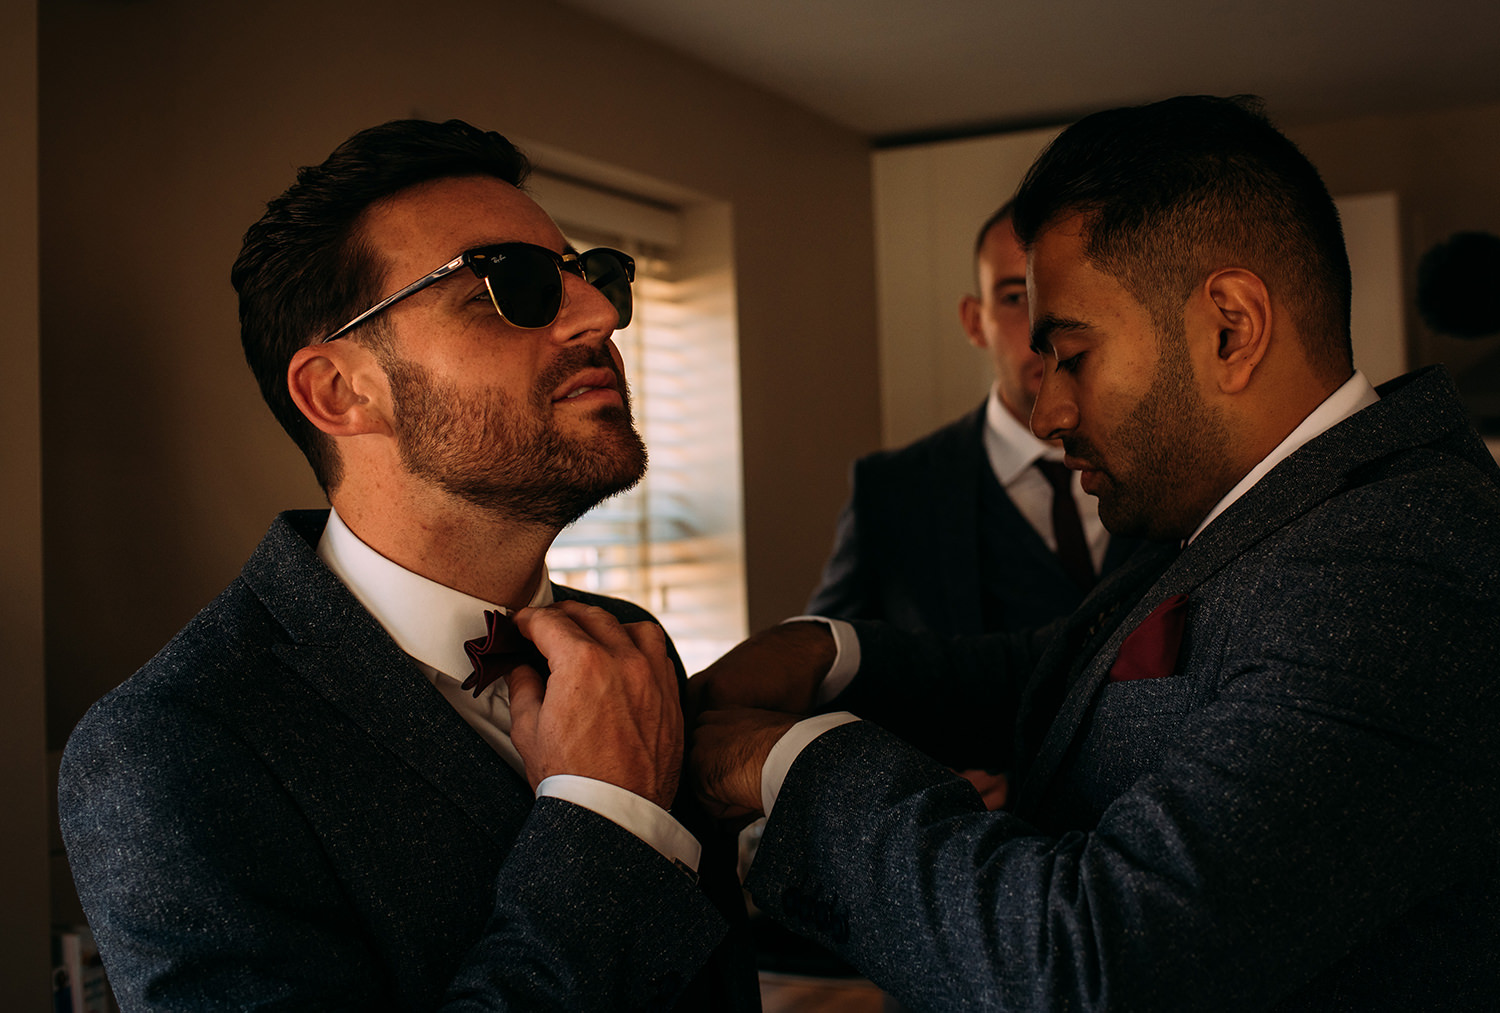  groom adjusting his tie 